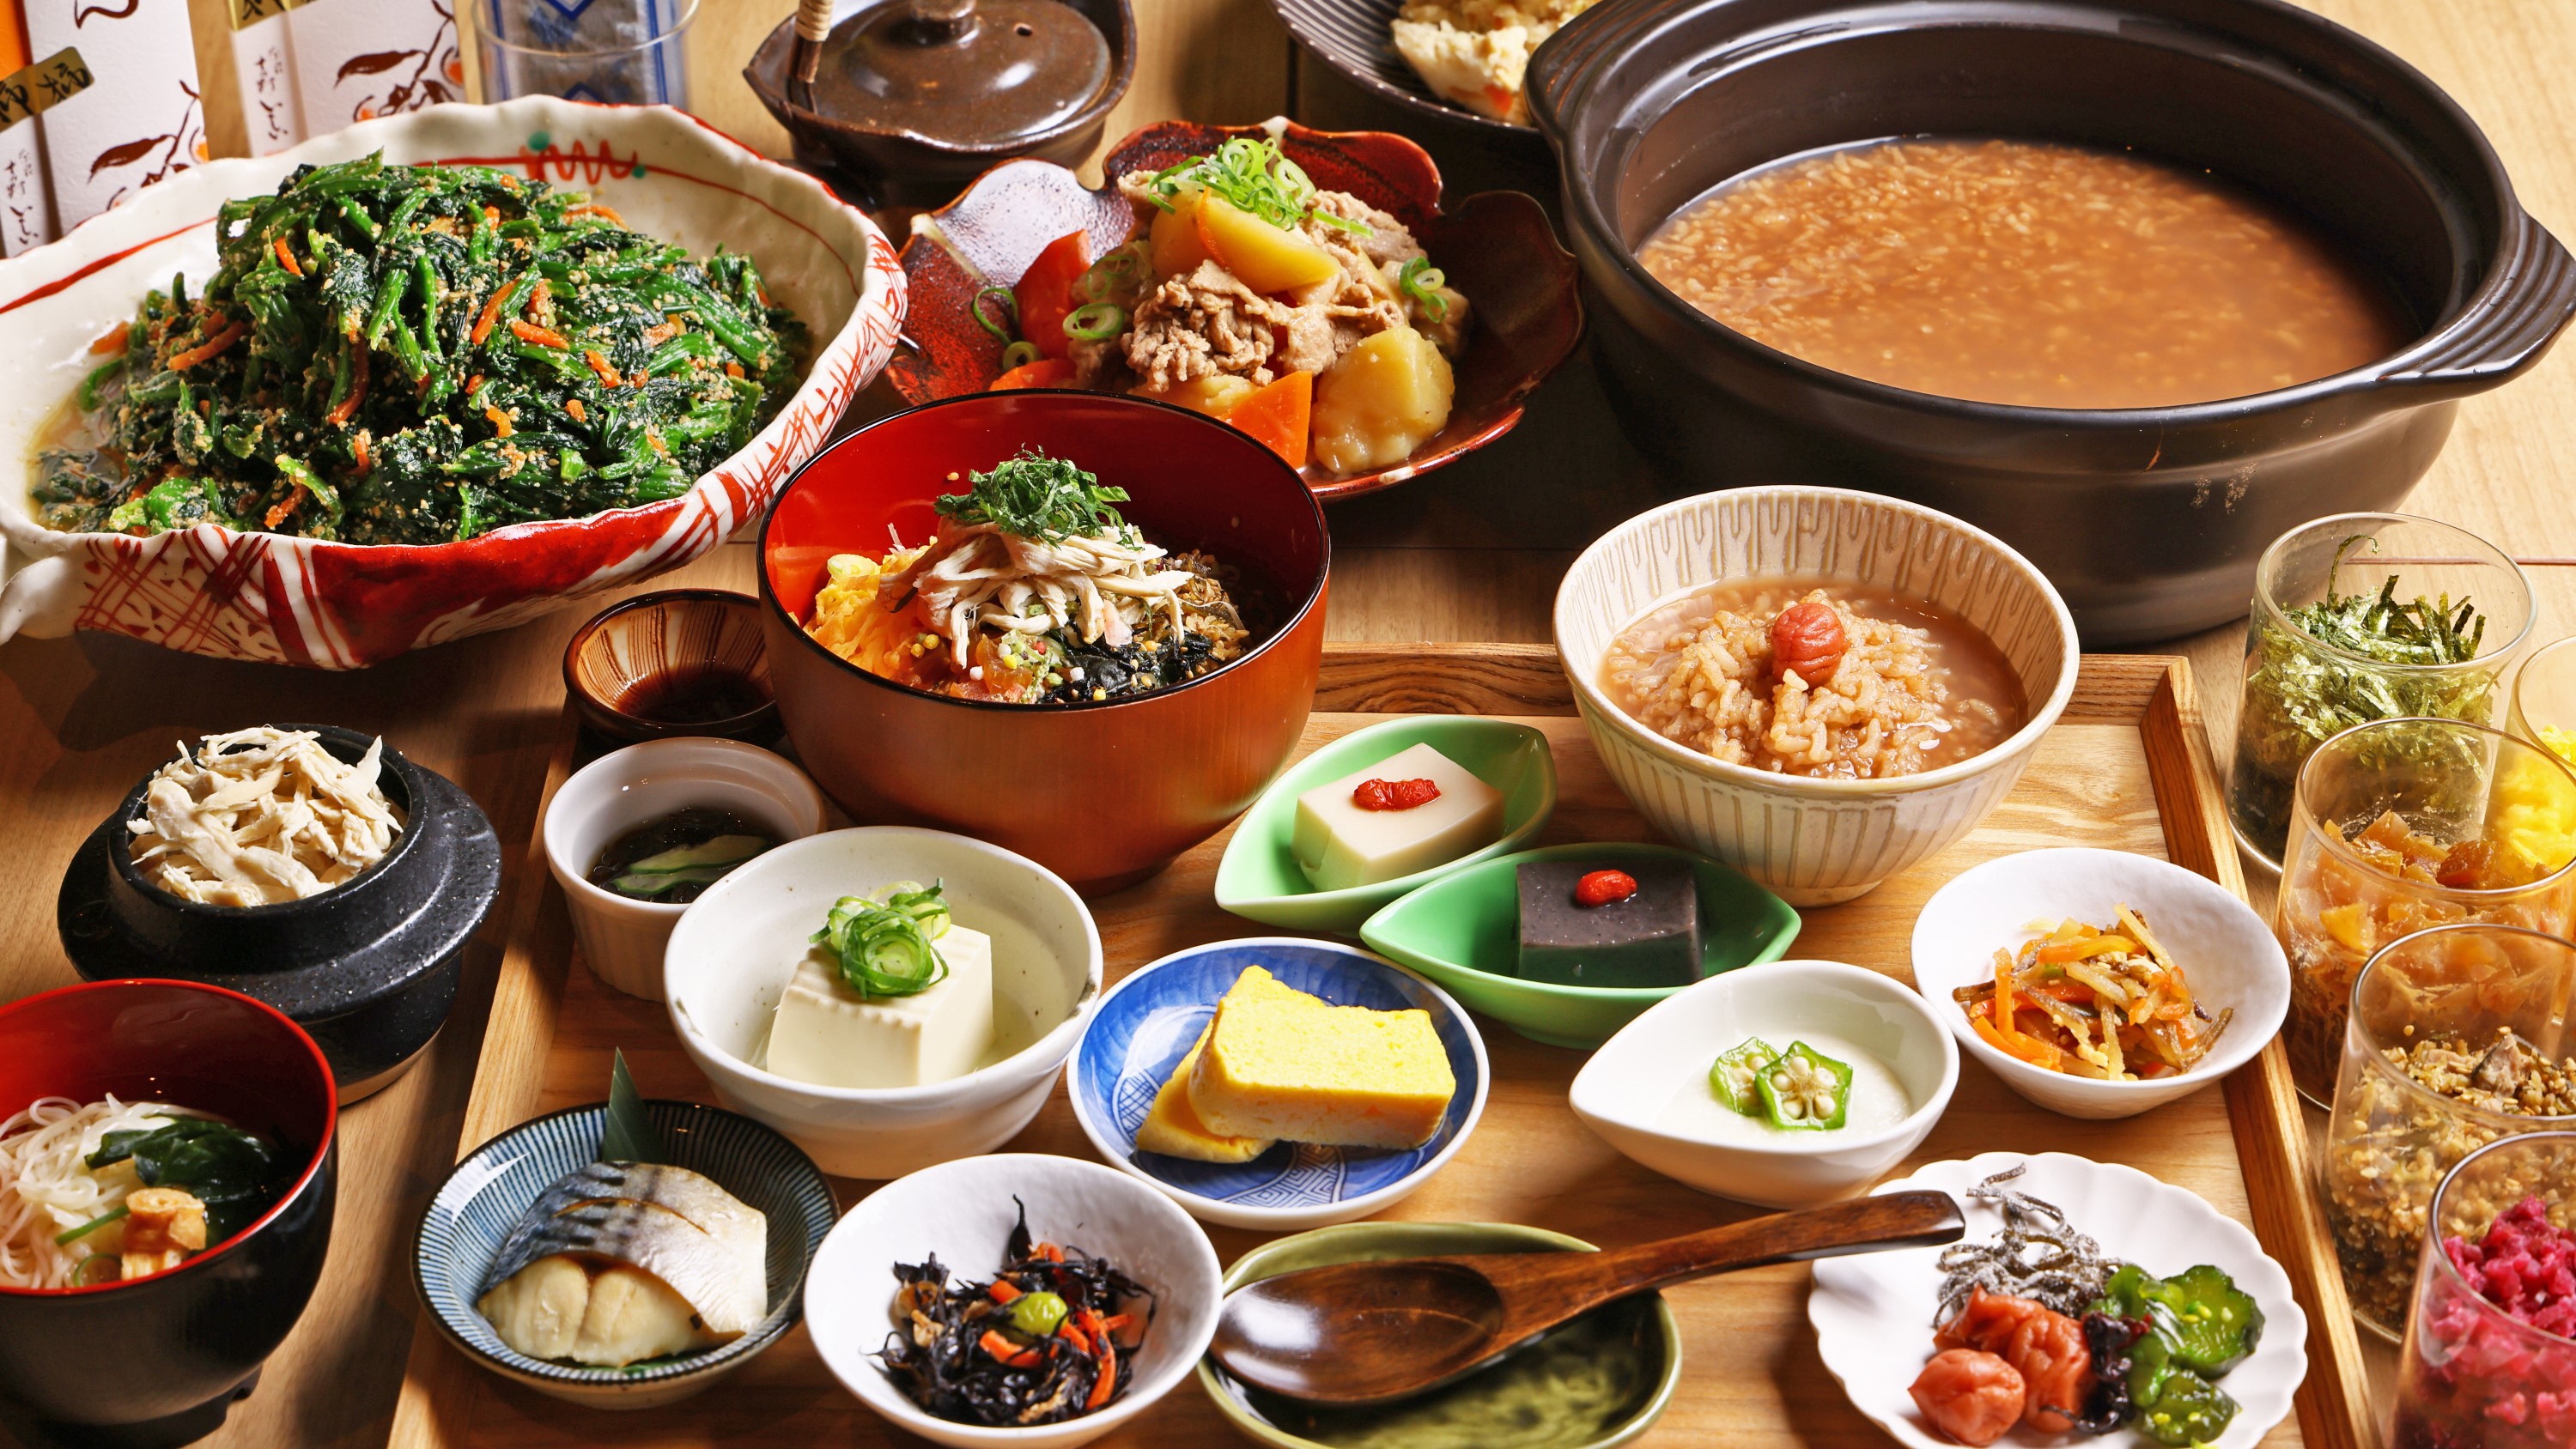 至福の朝を迎える、奈良のホテル朝食ブッフェ「和の味わい」